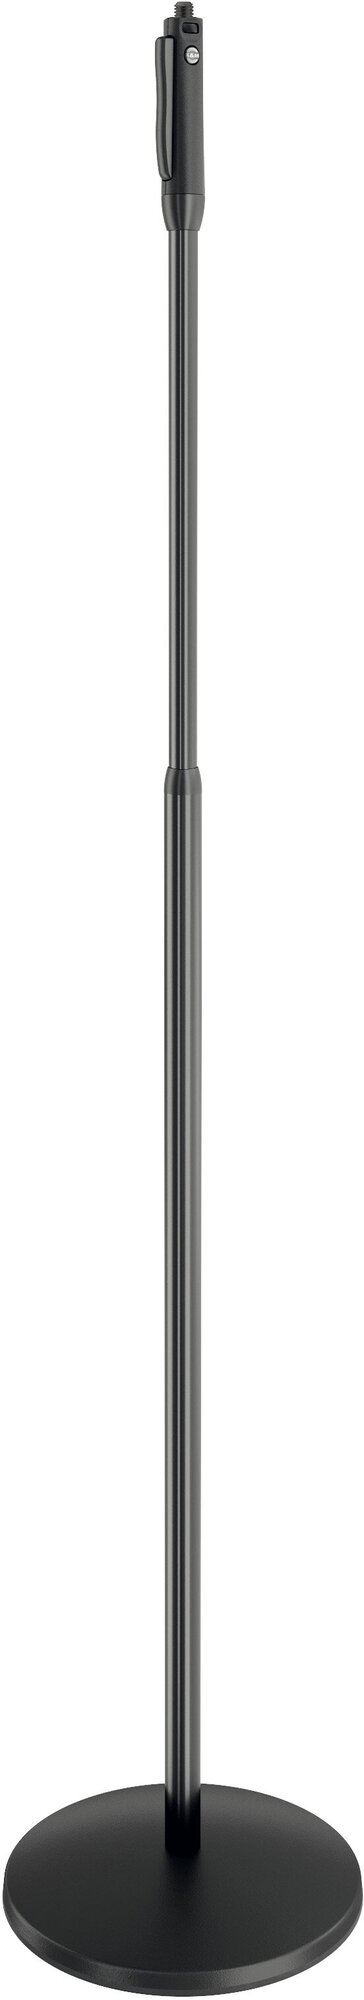 K&M 26200-300-55 Elegance прямая микрофонная стойка с пневматической системой регулировки высоты, круглое основание, высота 1055-1735 мм, цвет черный